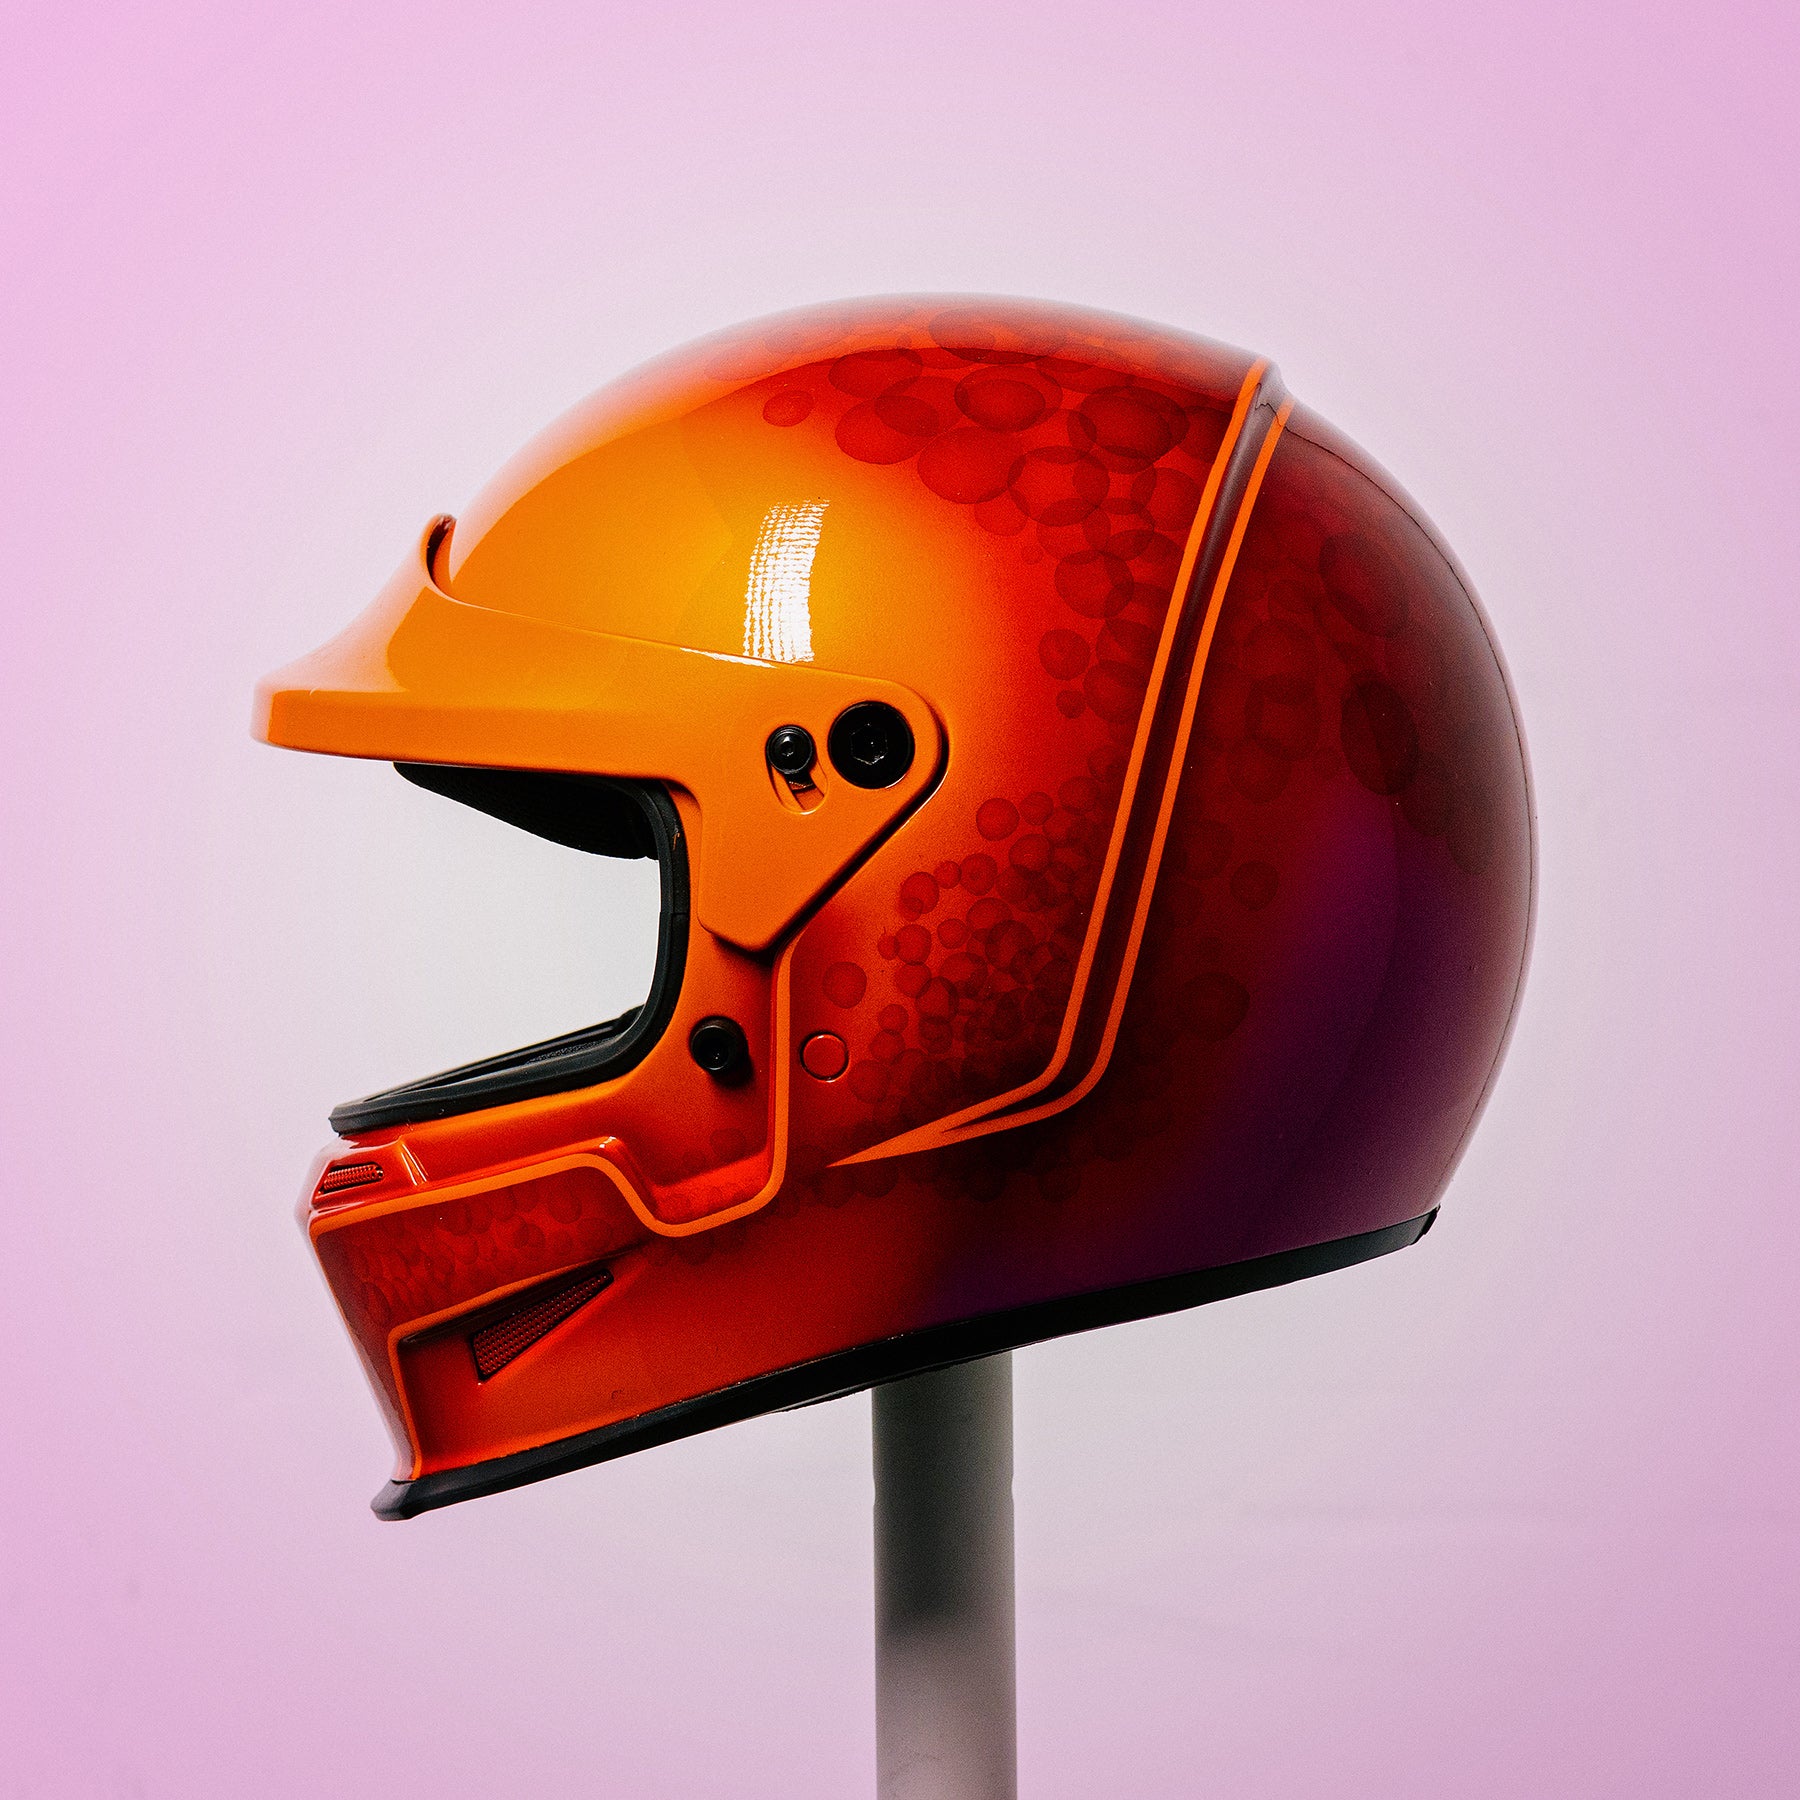 Trippy Ten helmet art show Pittsburgh Glory Daze motorcycle show Bell Helmets Peter Stovicek Quikcolor